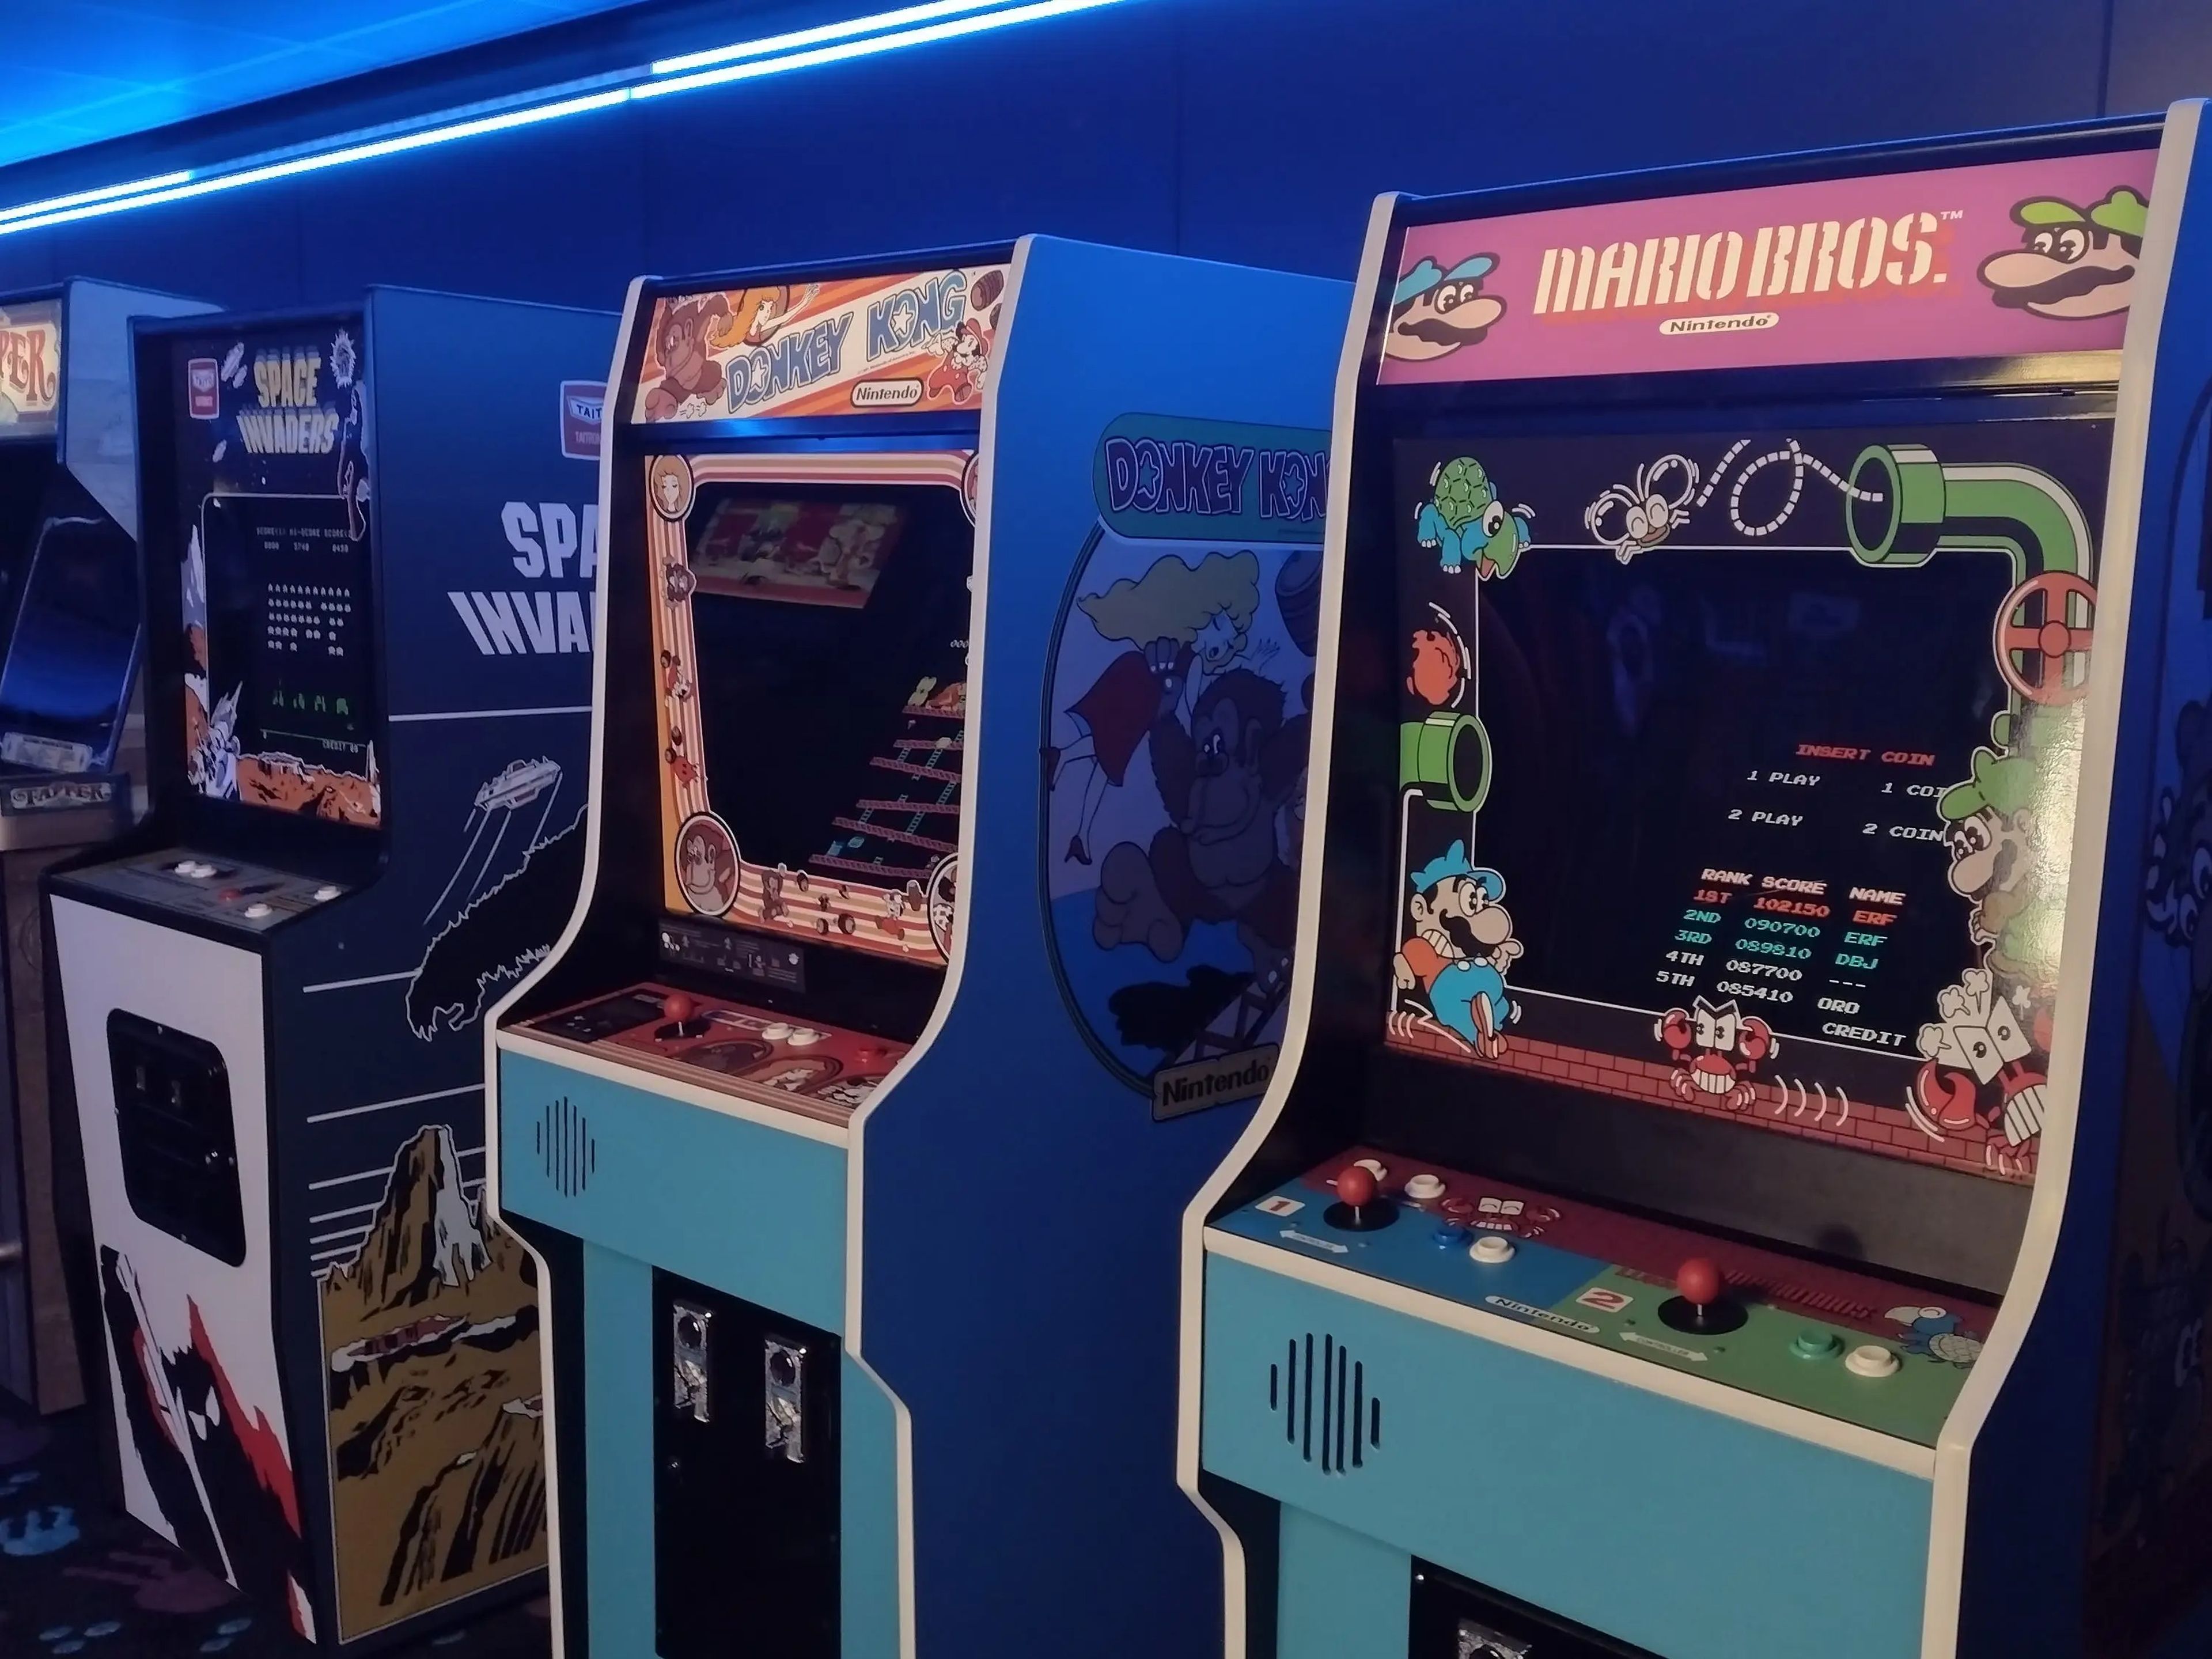 A row of vintage-looking arcade games.